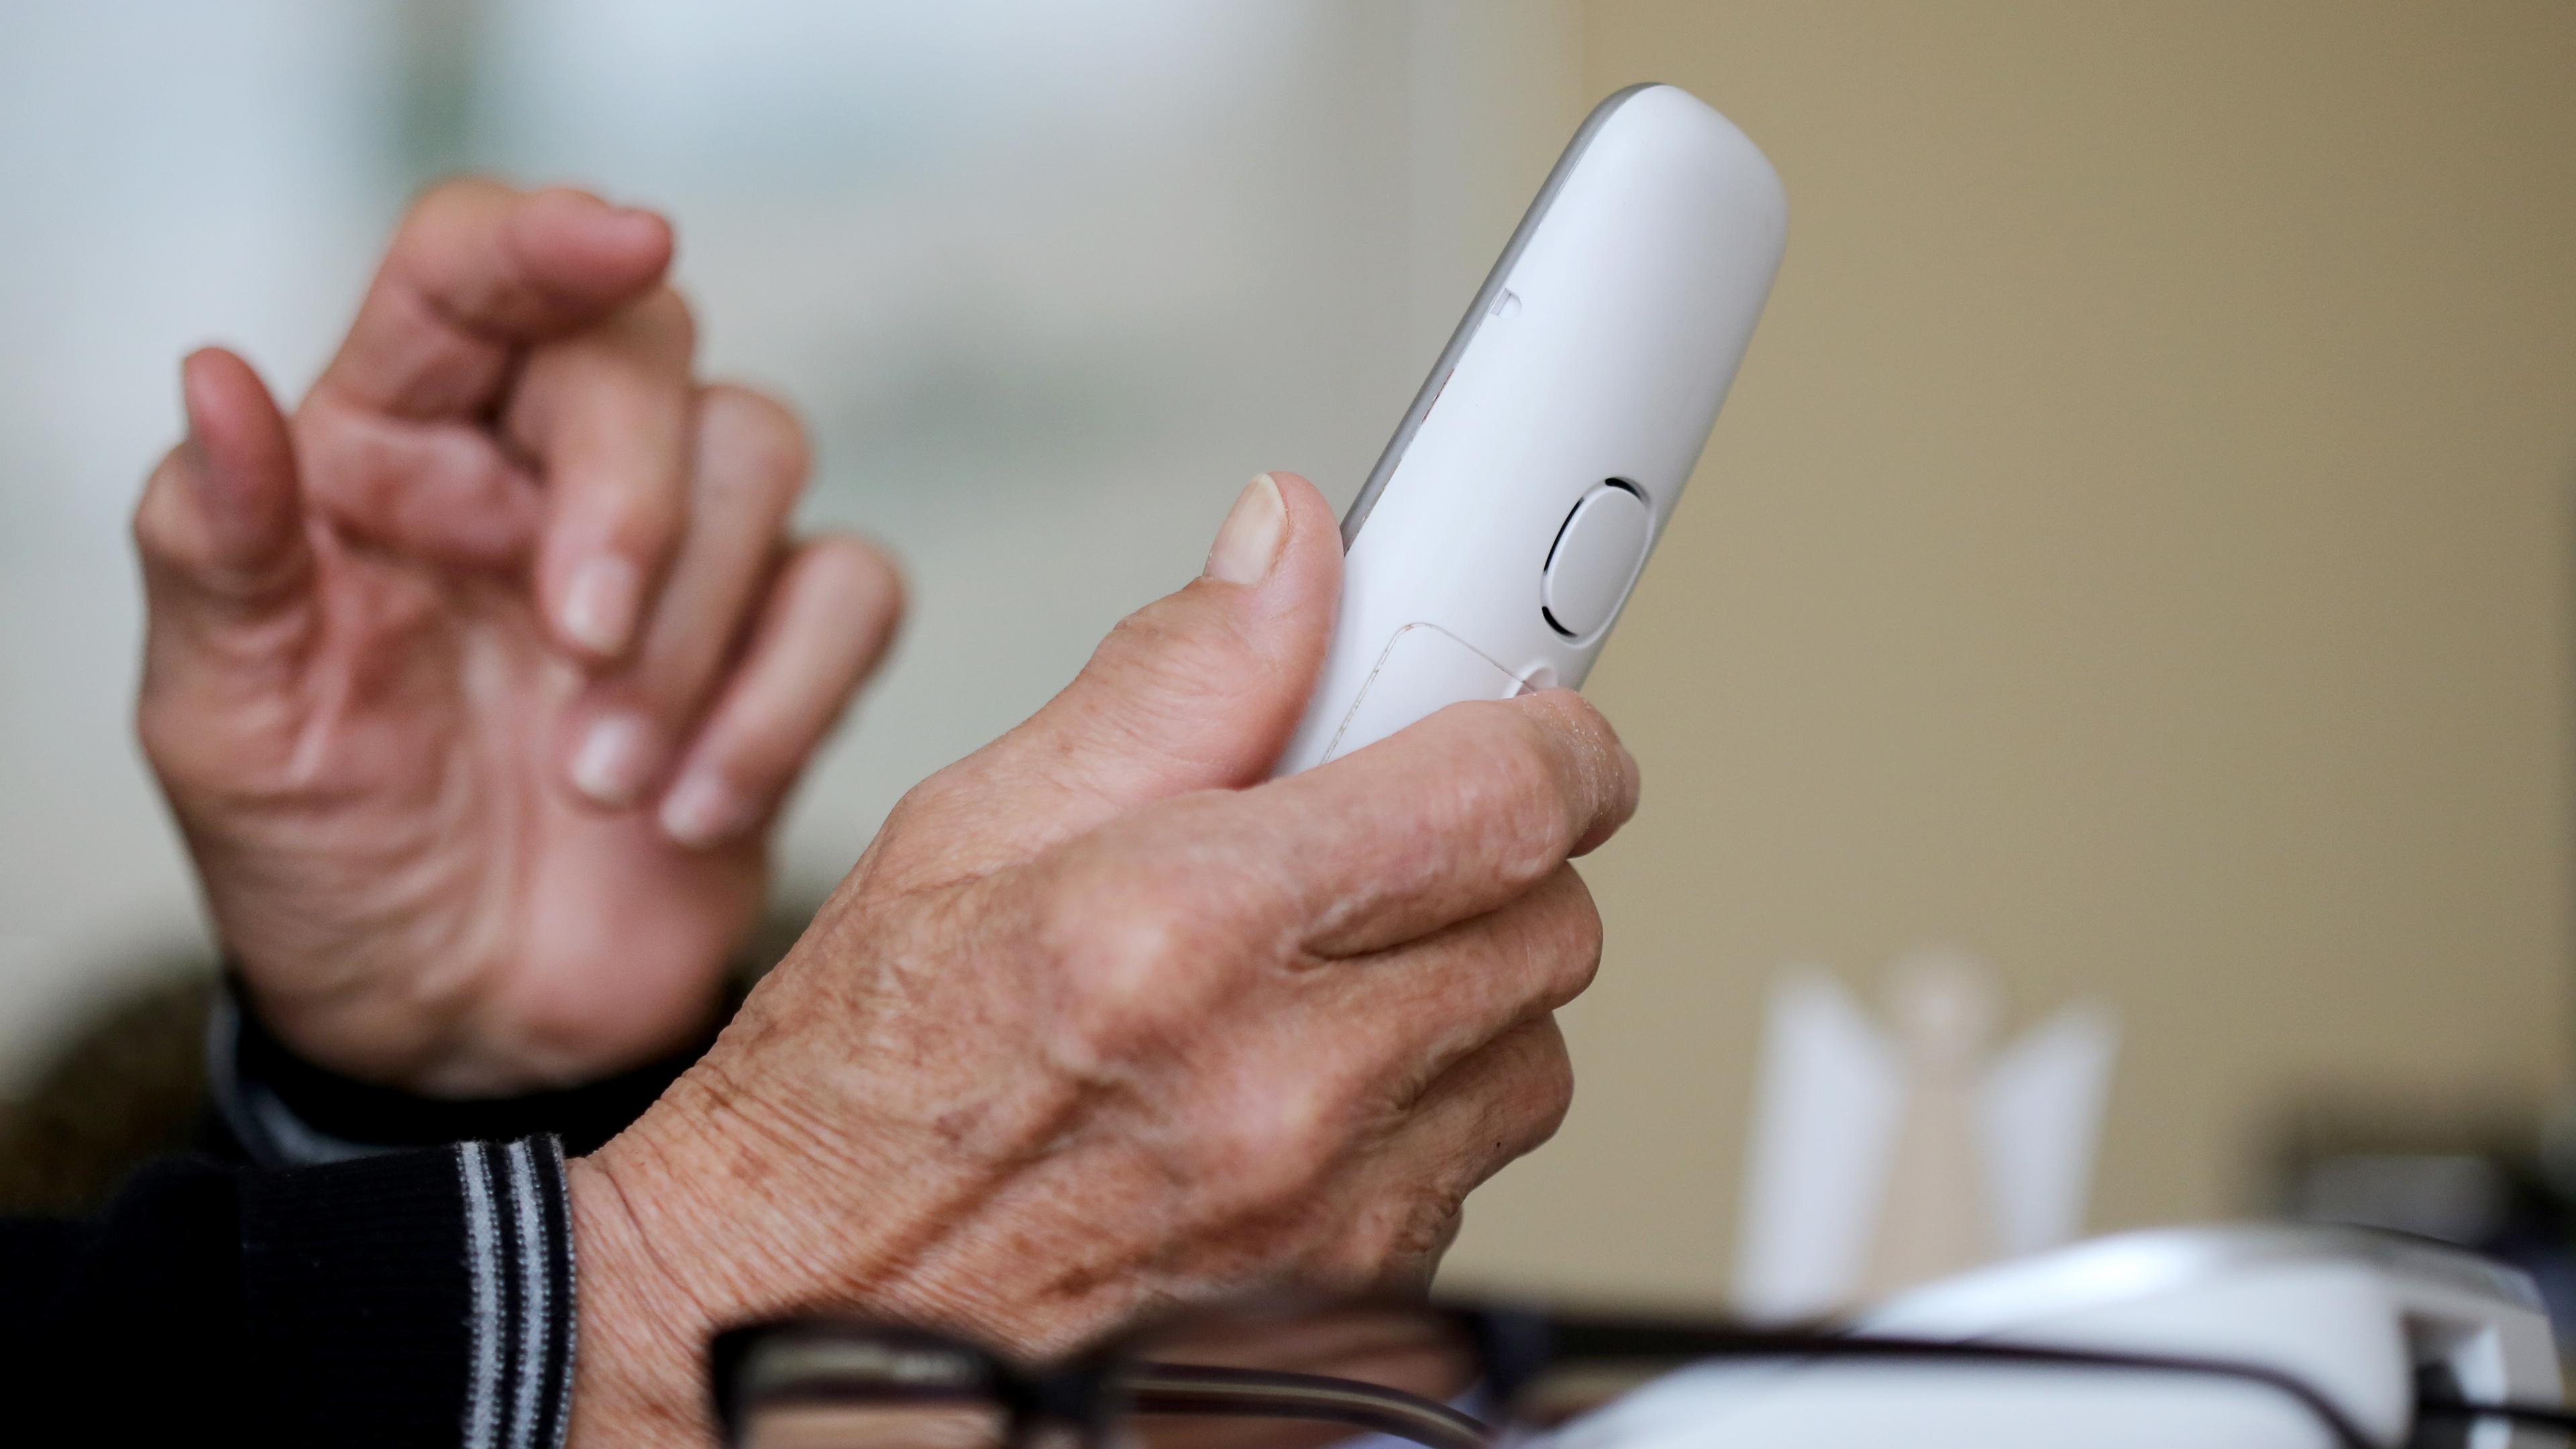 Die Hände einer älteren Person sind zu sehen, in der rechten Hand wird ein weißer Telefonhörer gehalten.